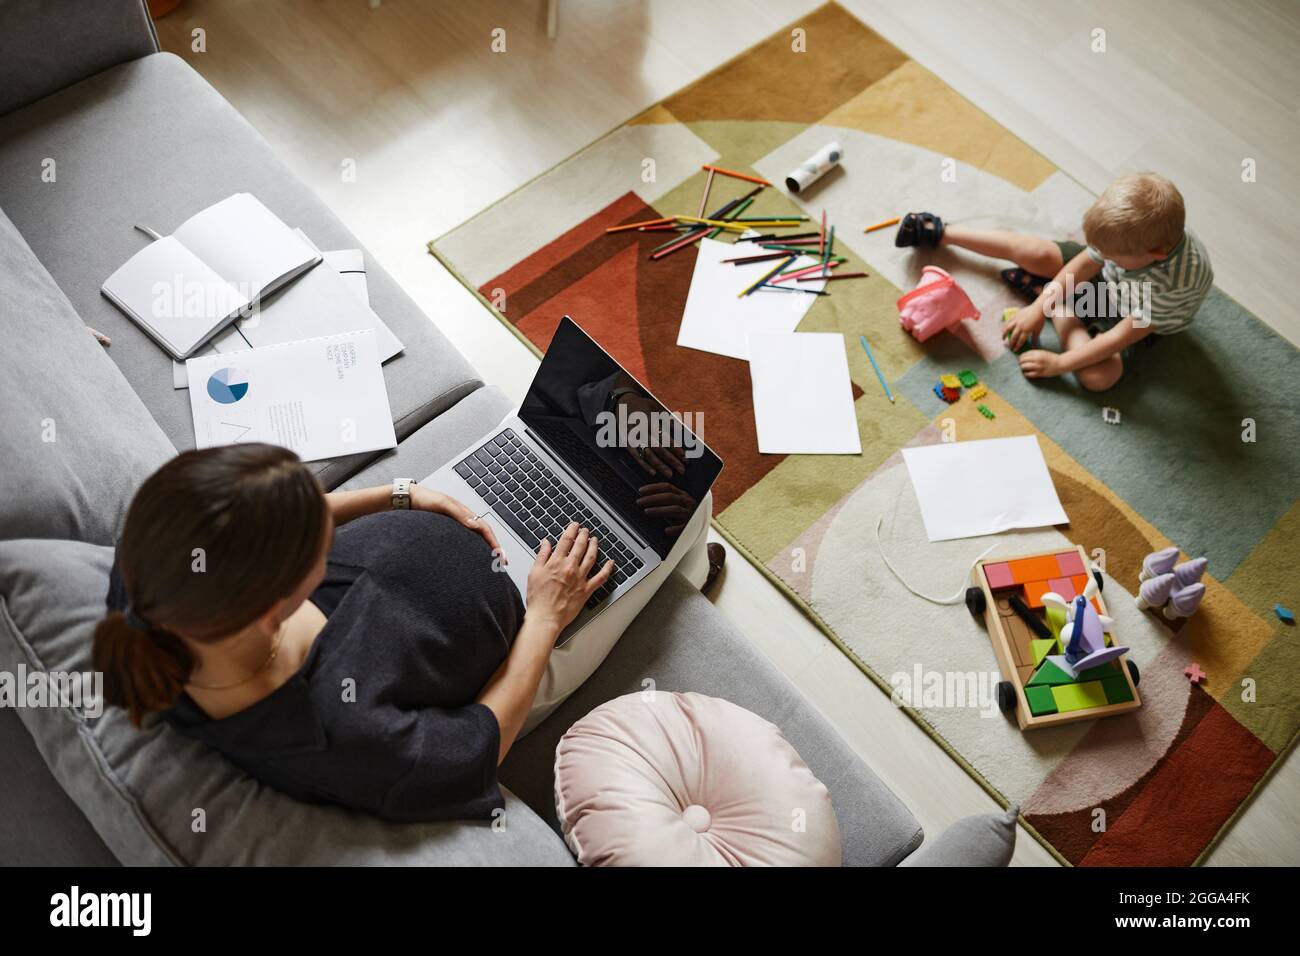 Sopra il viiew della madre incinta occupata usando il laptop mentre suo figlio gioca con i giocattoli sul tappeto nel soggiorno Foto Stock